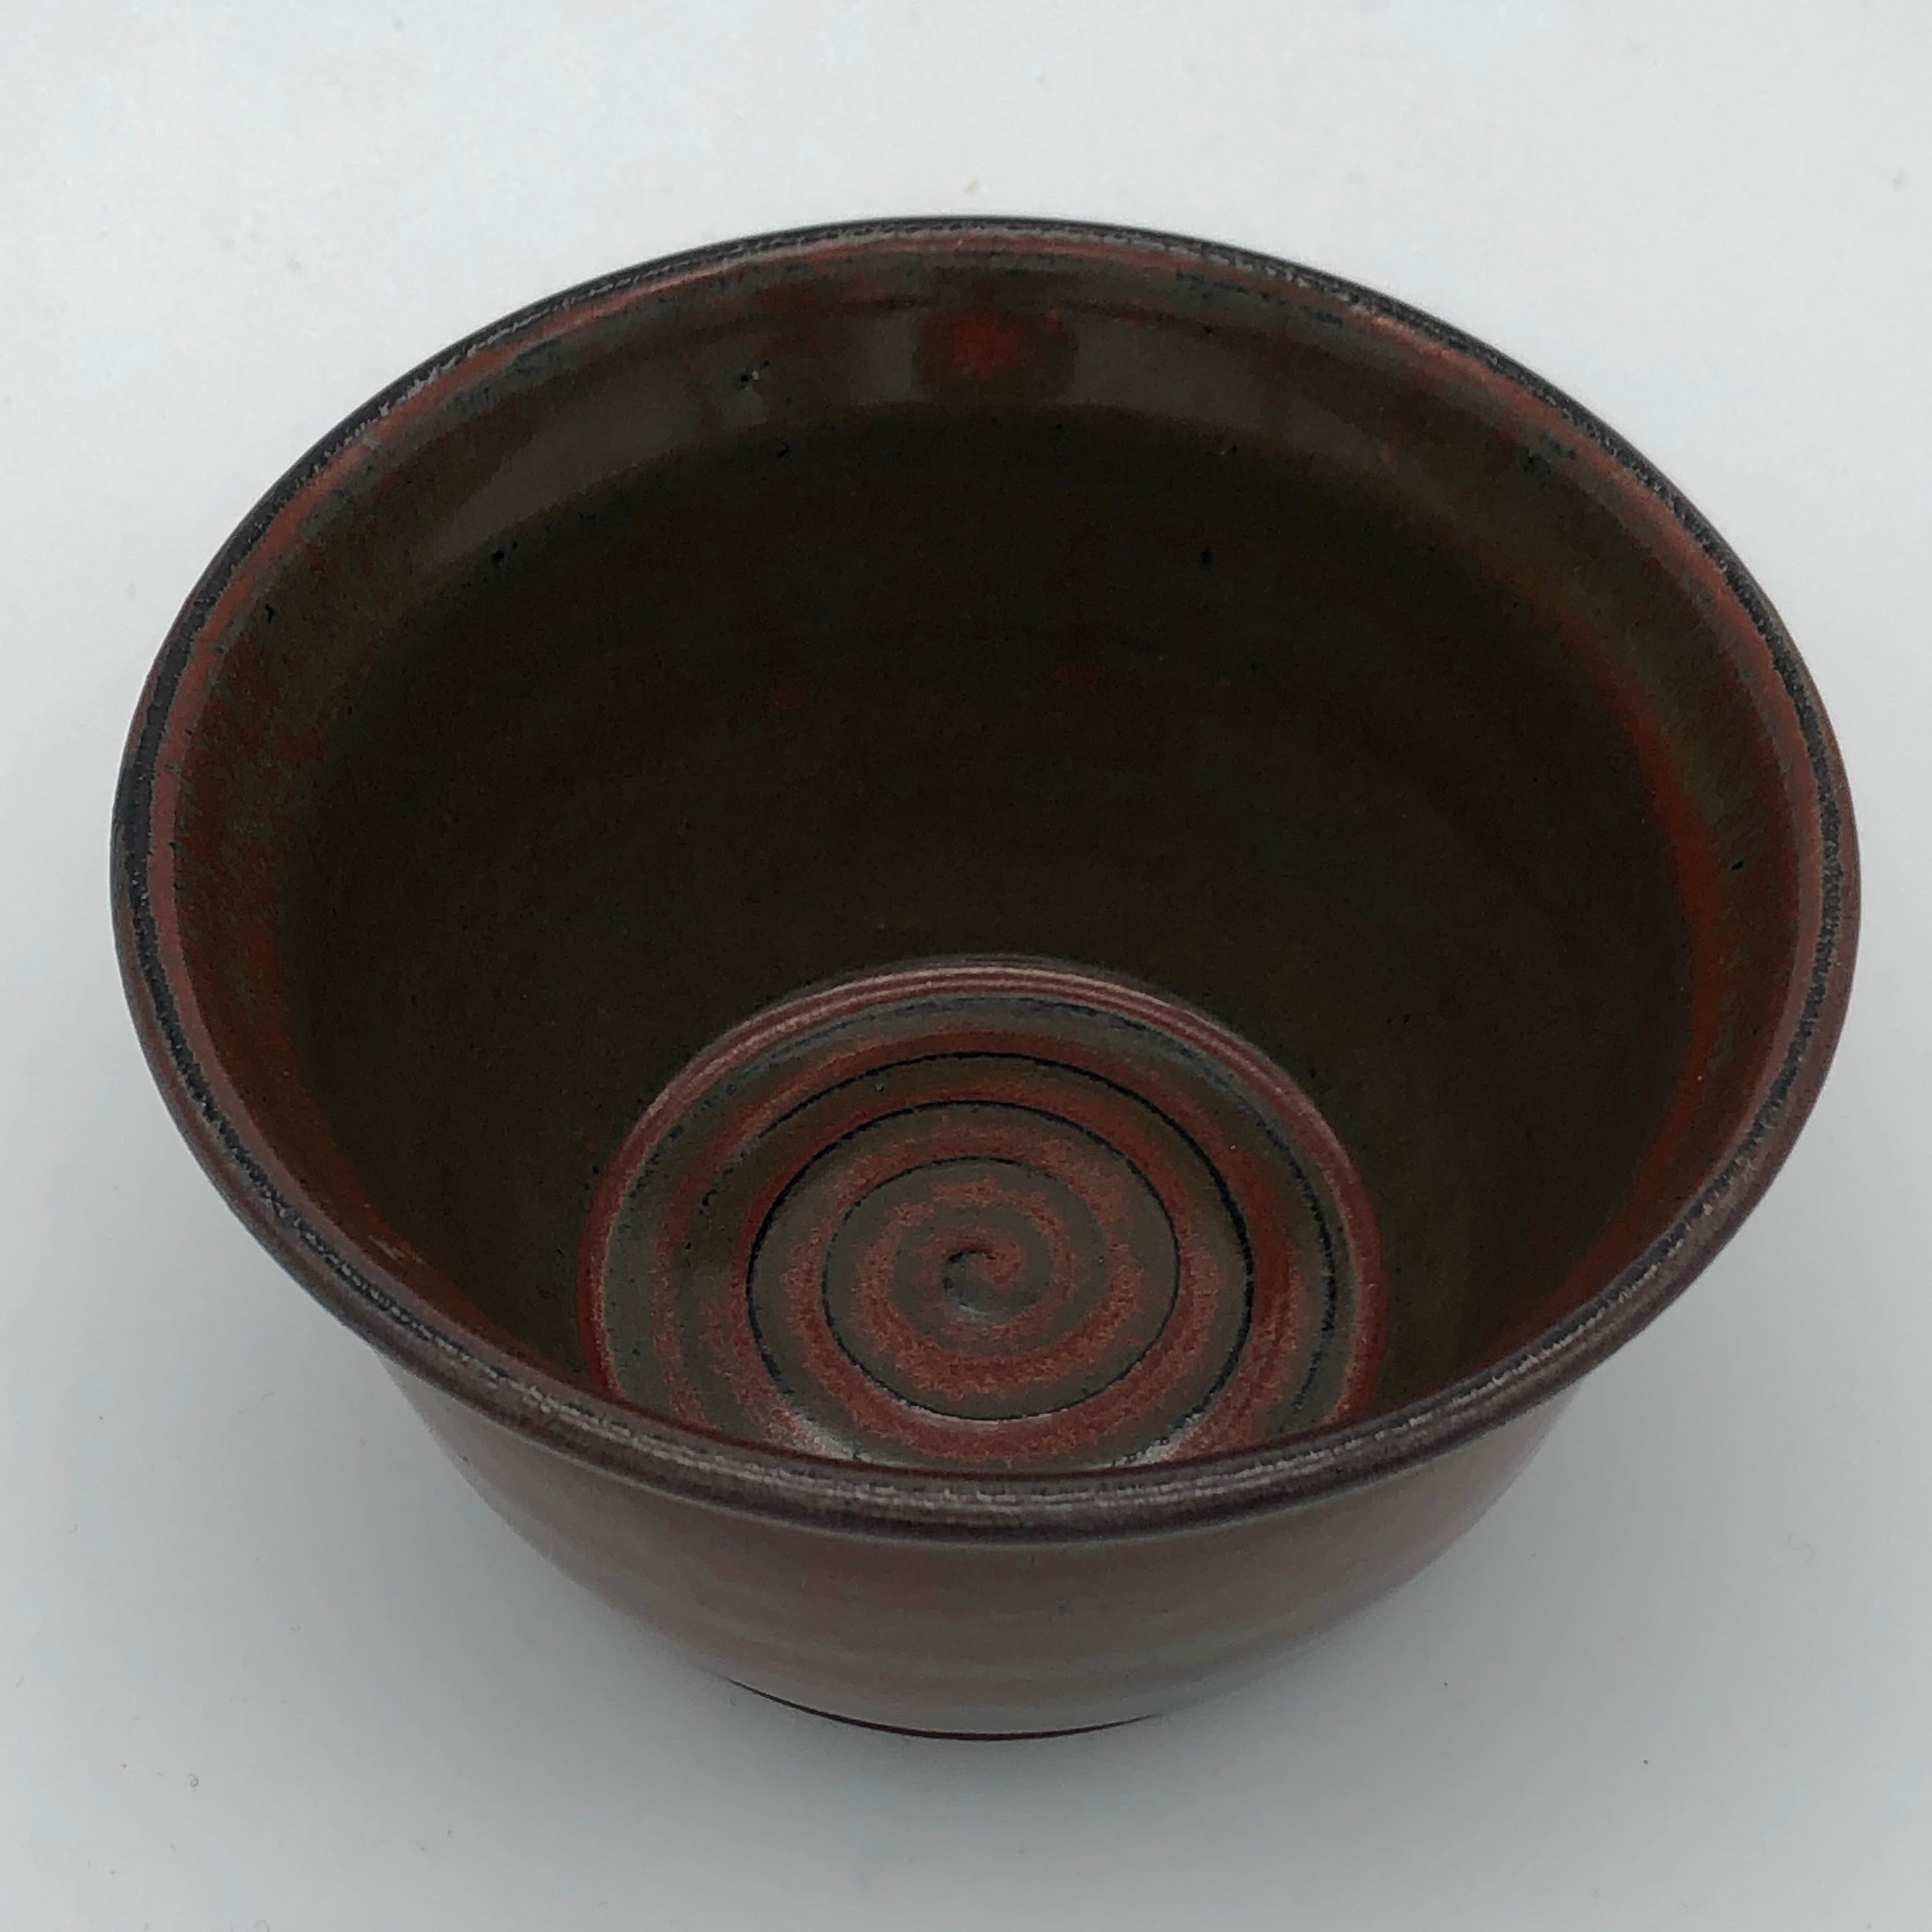 Small bowl in Ancient Jasper